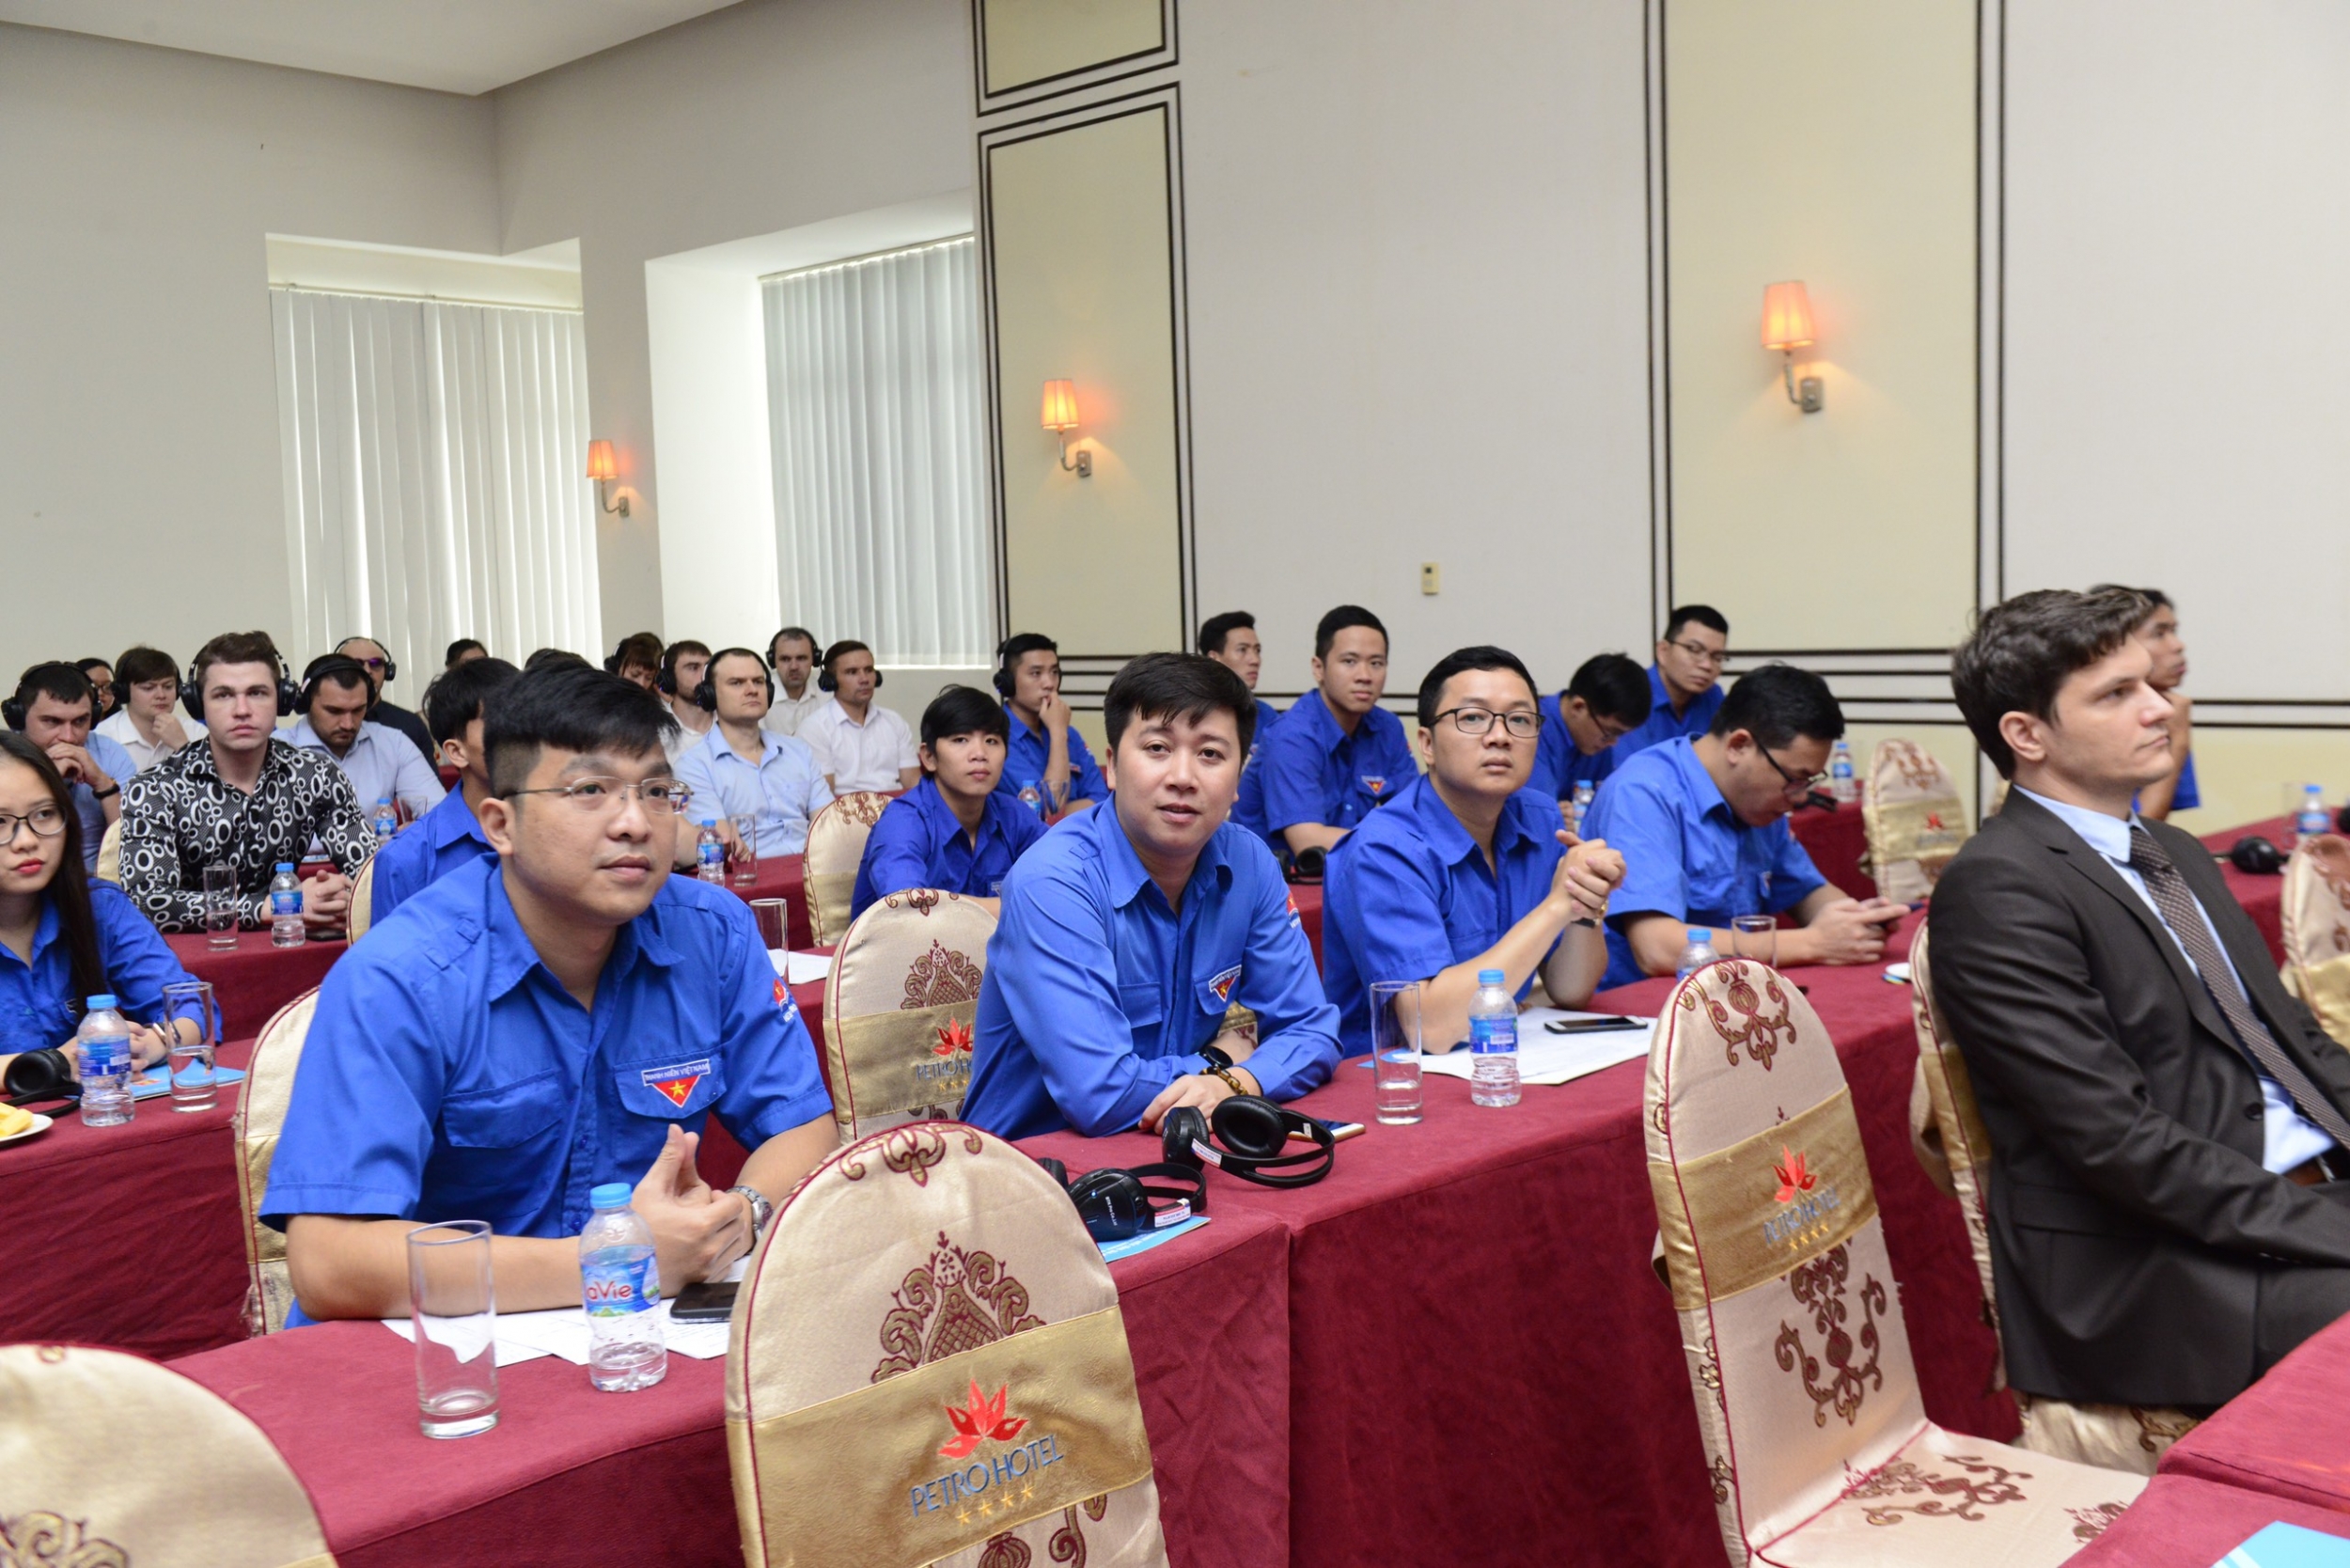 Tuổi trẻ Vietsovpetro phối hợp tổ chức chương trình Giao lưu hữu nghị thanh niên Việt Nam - Liên bang Nga 2020